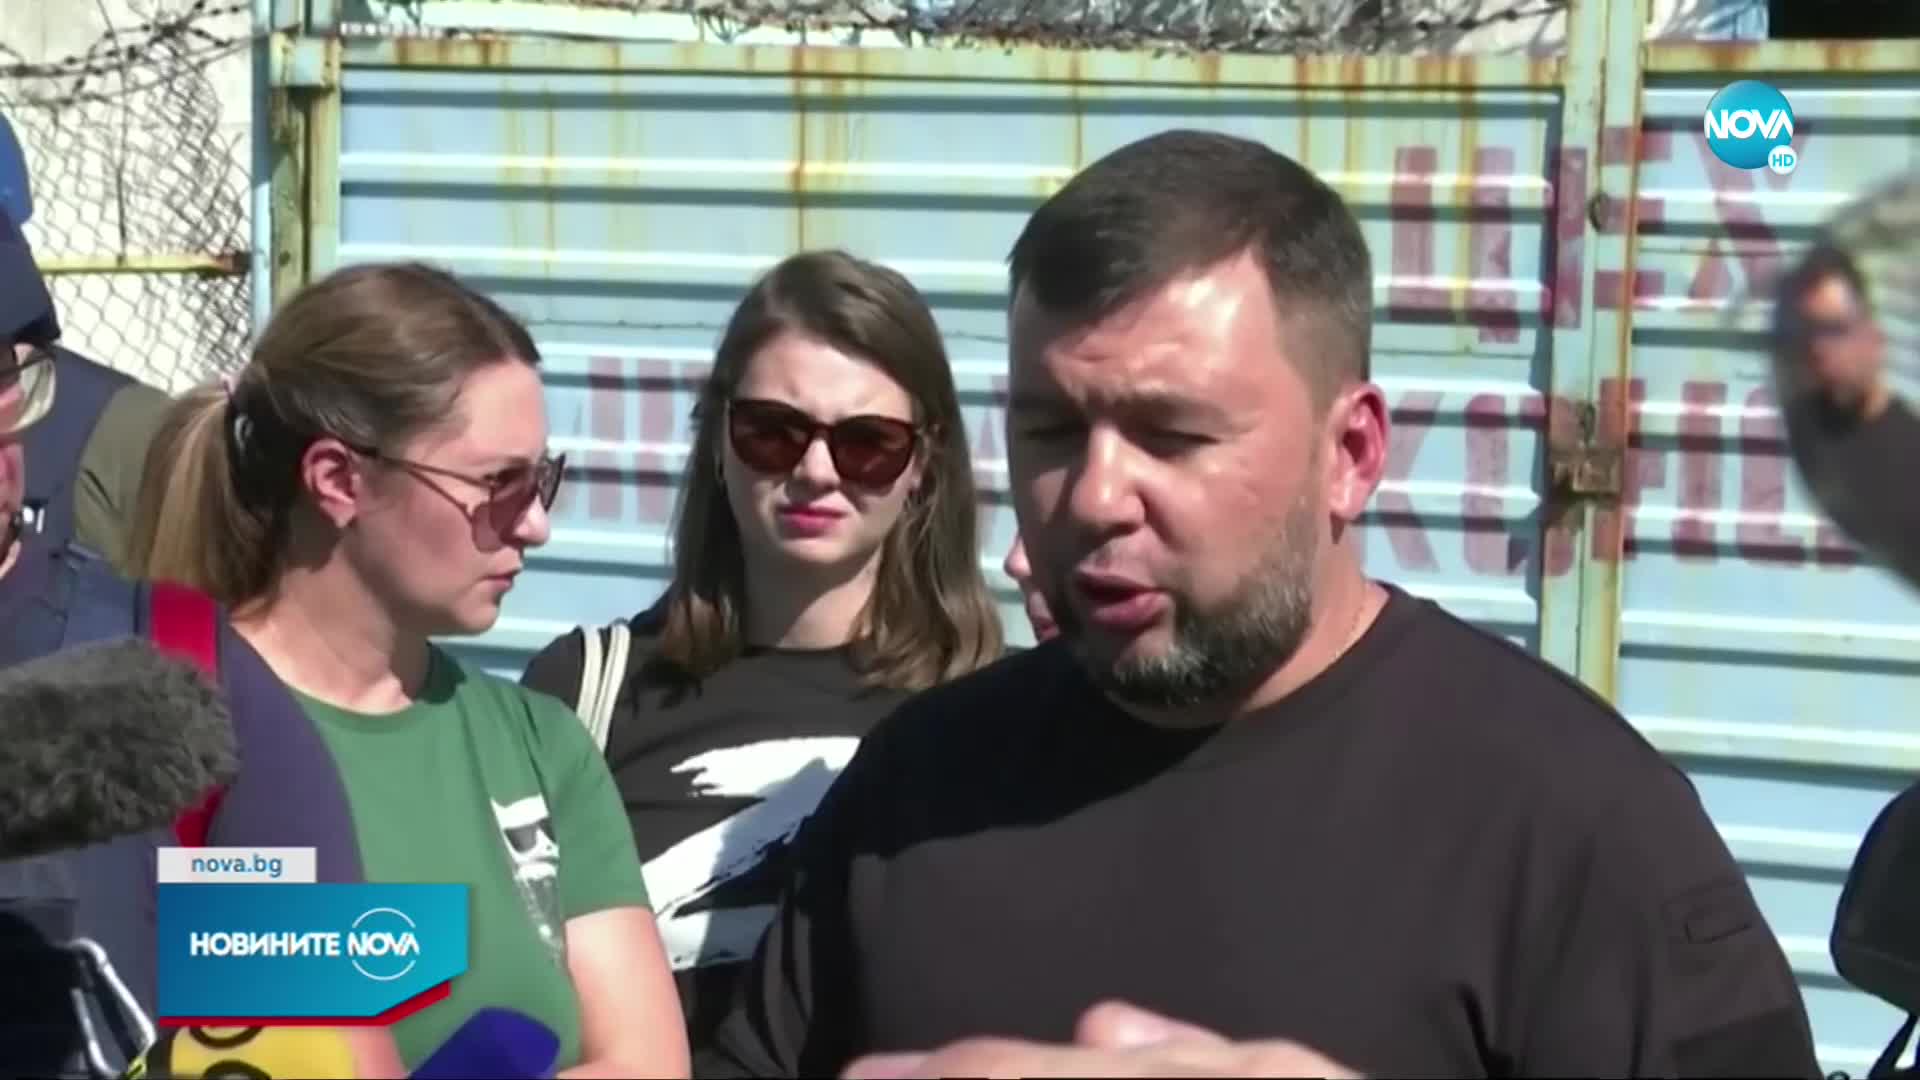 ДНР готви процес срещу украински военнопленници